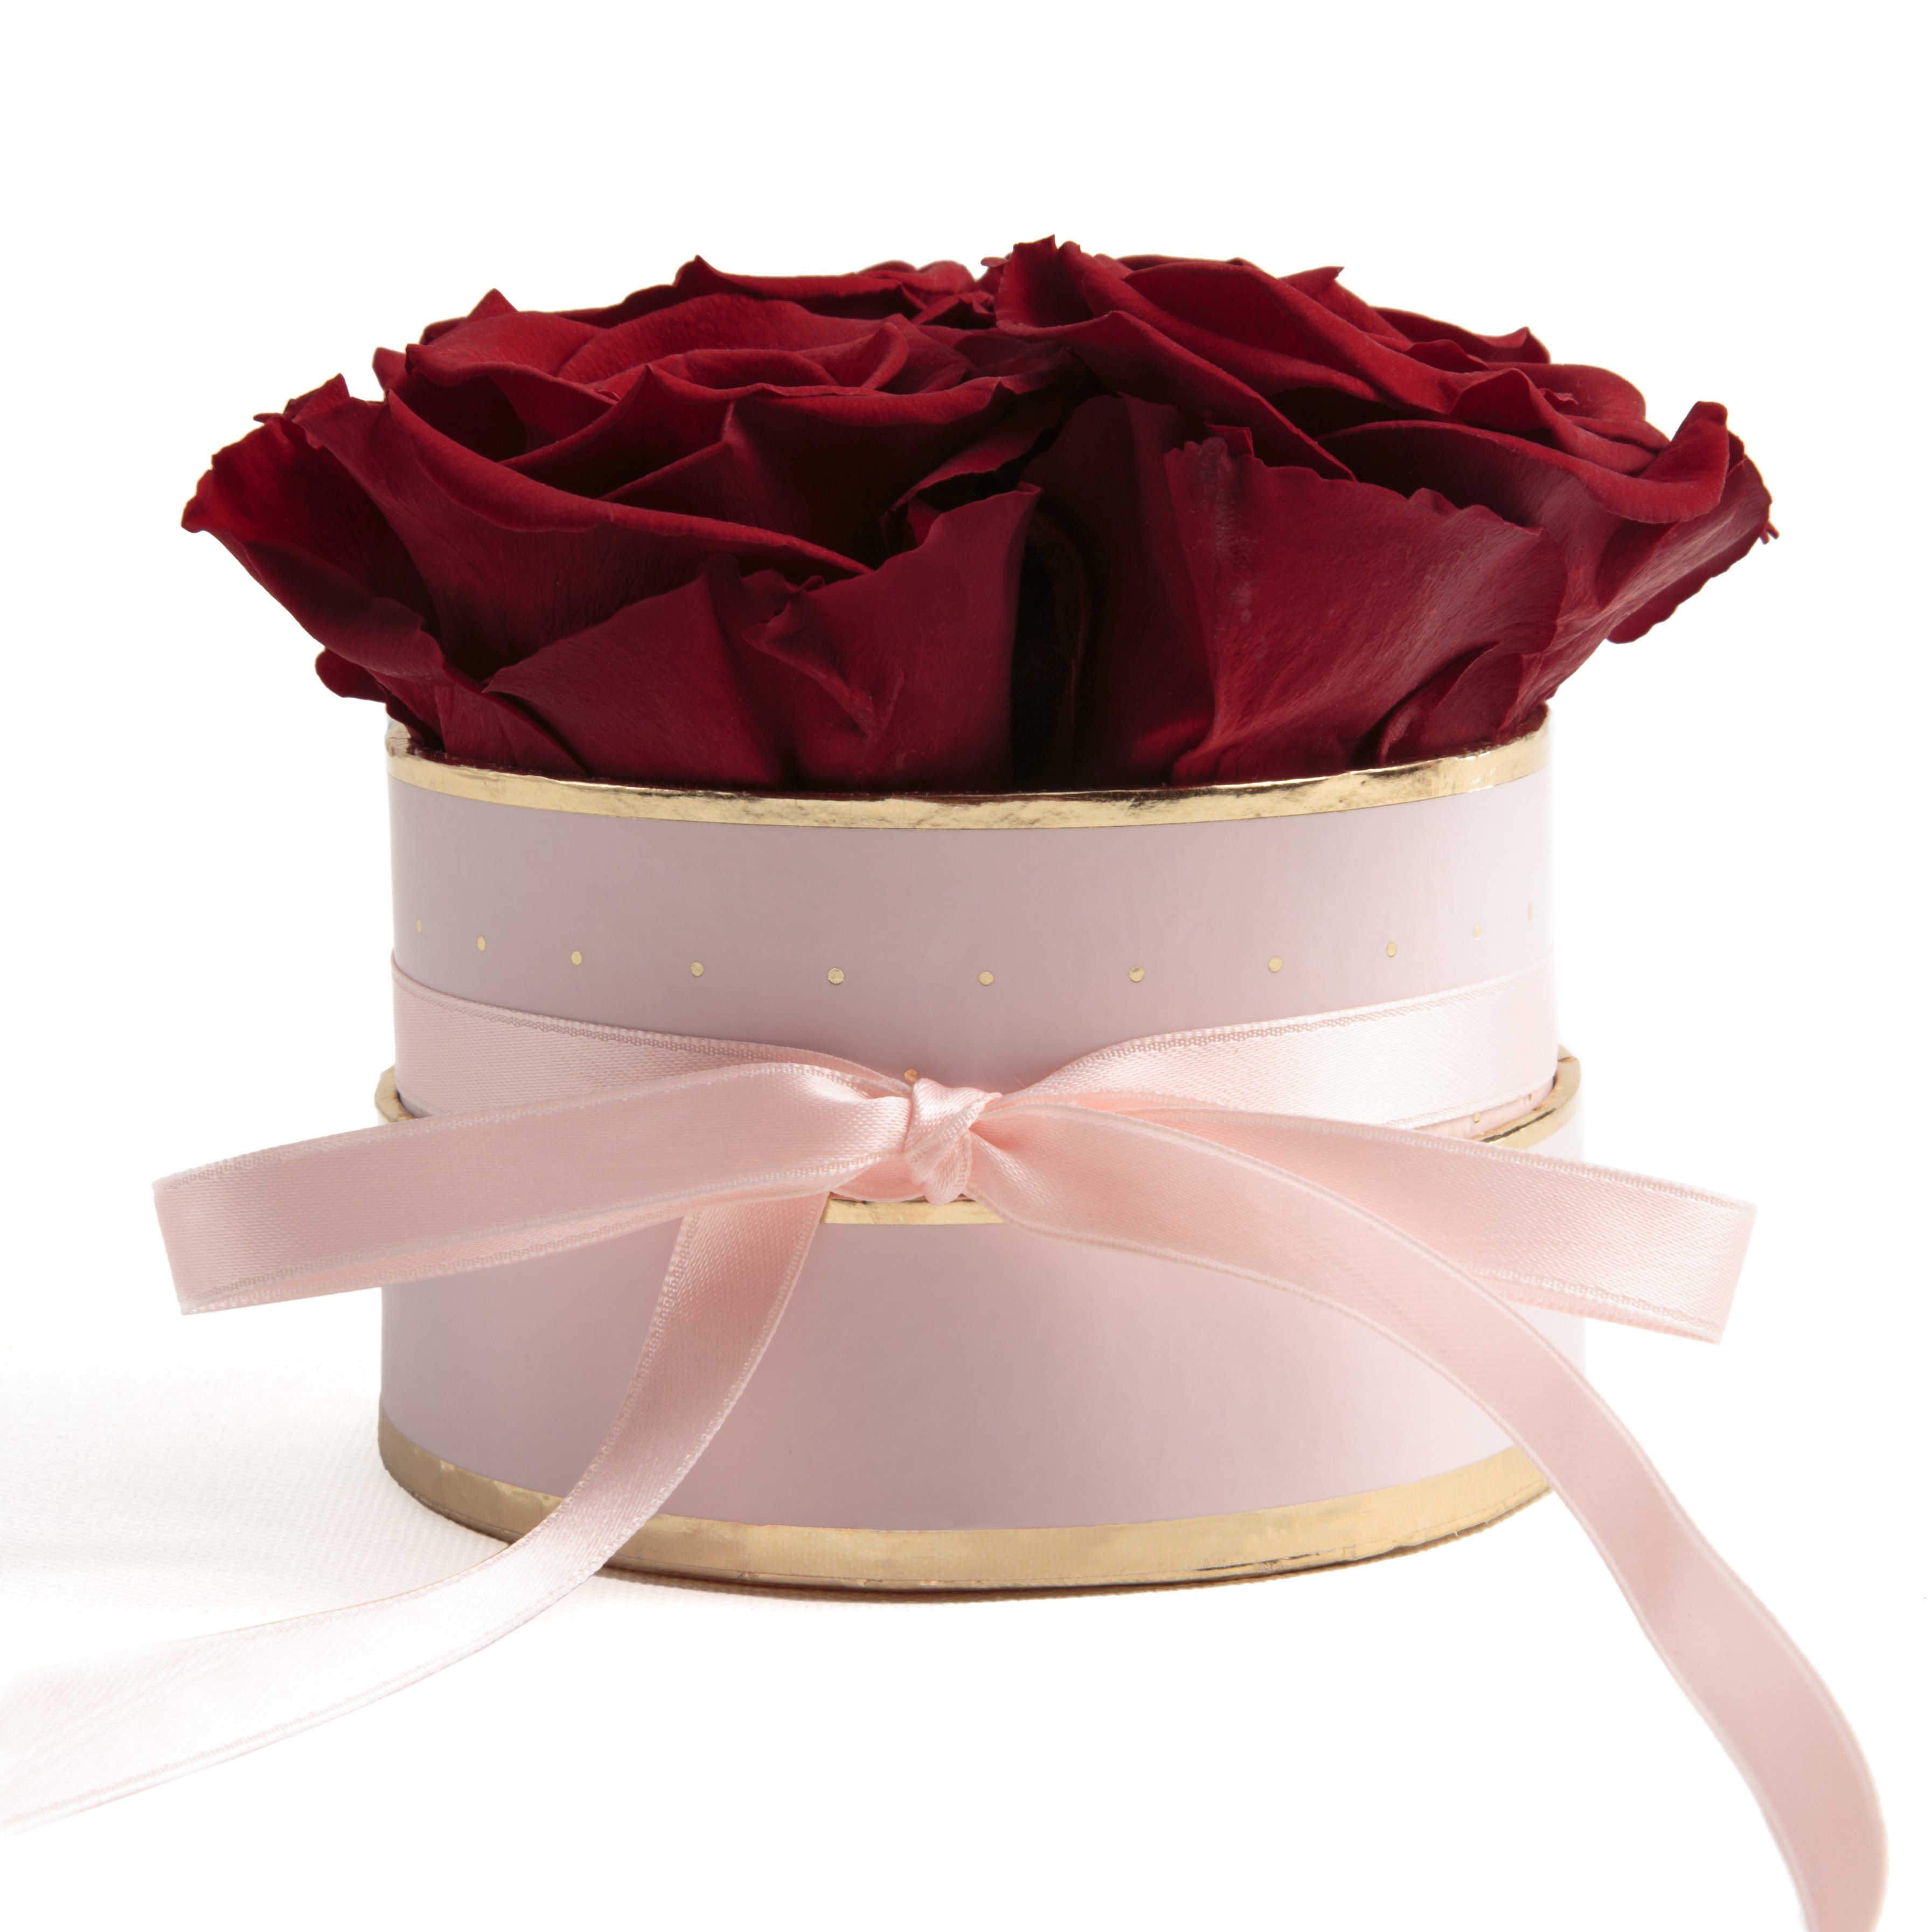 Blaues Gold VANKOA Herzform Rosenbox Blumenbox konservierte ewige Rose Geschenk für Frauen